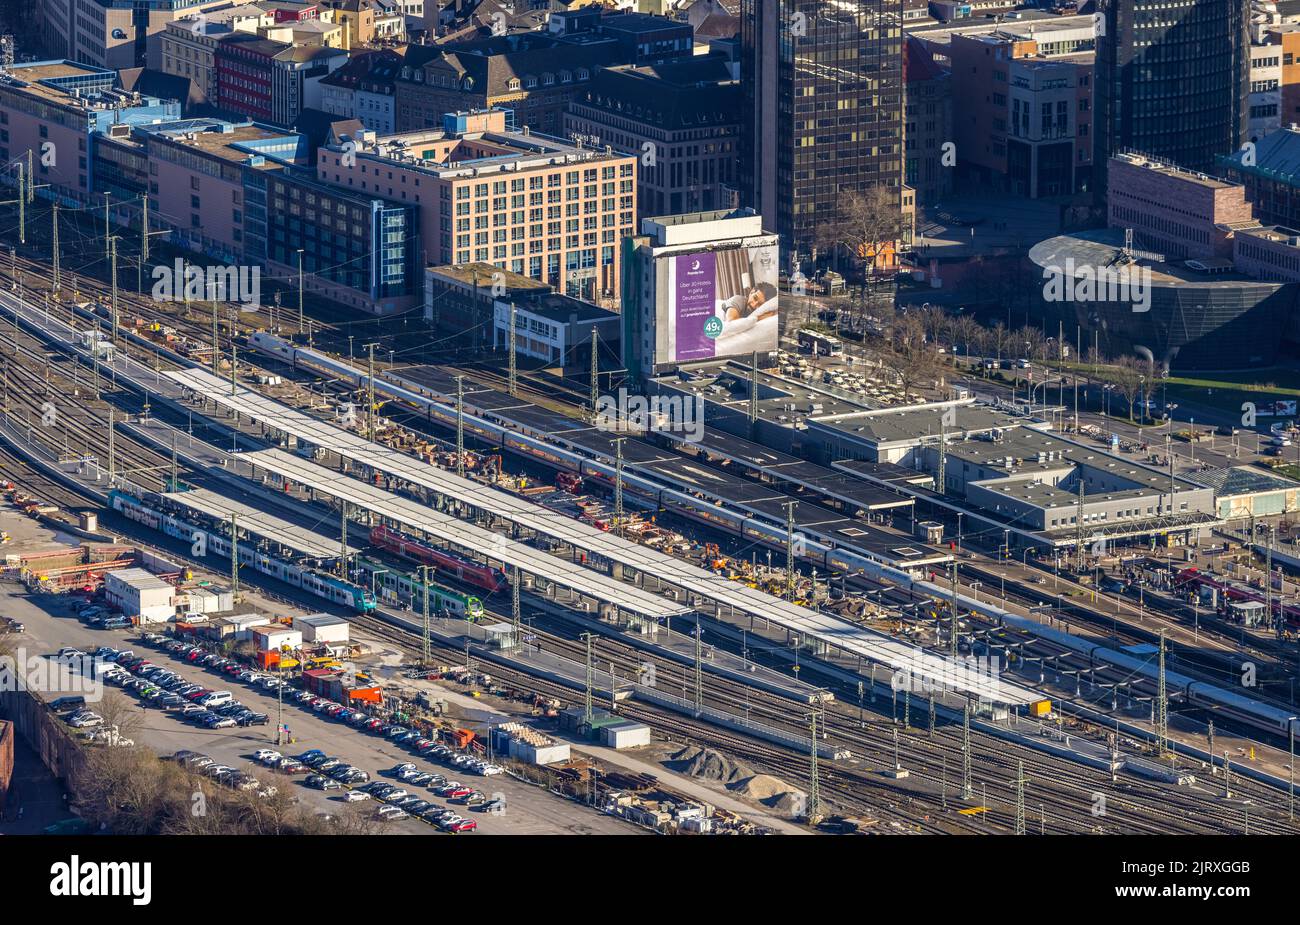 Vista aerea, stazione principale di Dortmund con rinnovo della piattaforma del cantiere, Città, Dortmund, zona della Ruhr, Renania settentrionale-Vestfalia, Germania, binari ferroviari Foto Stock